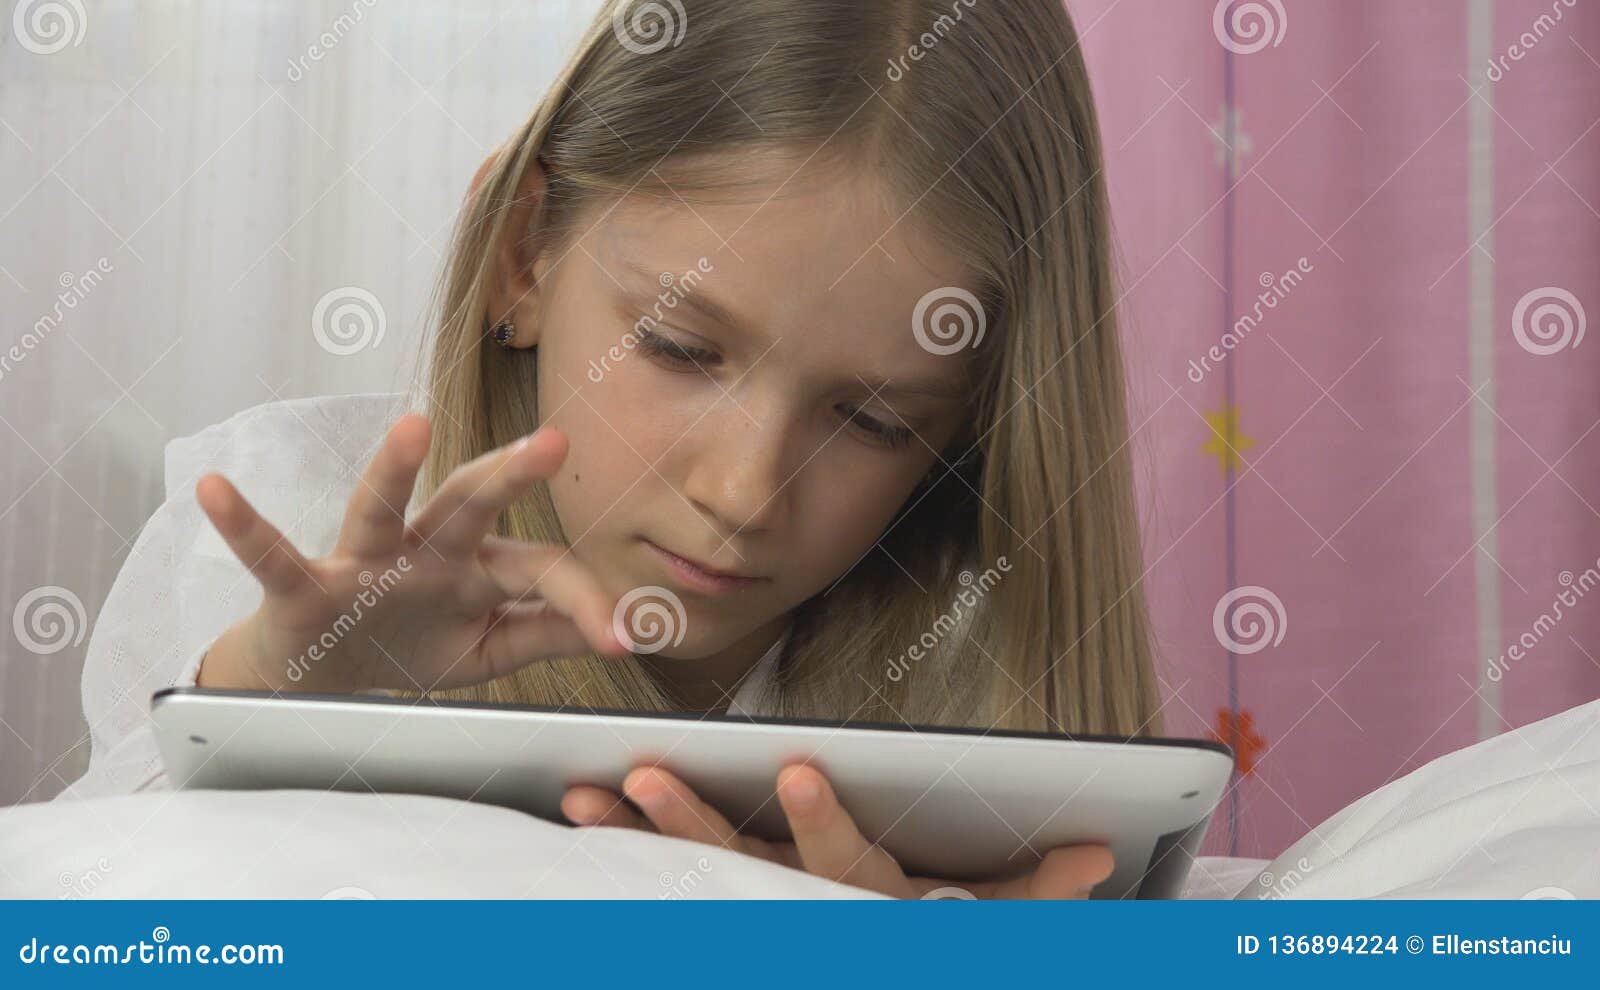 Девочка играет в планшет на кровате. Играть в планшет в кровати. Девочка с планшетом на коленках фото. Девочка играет в планшет в комнате домашнее. Русский домашний юные разговор